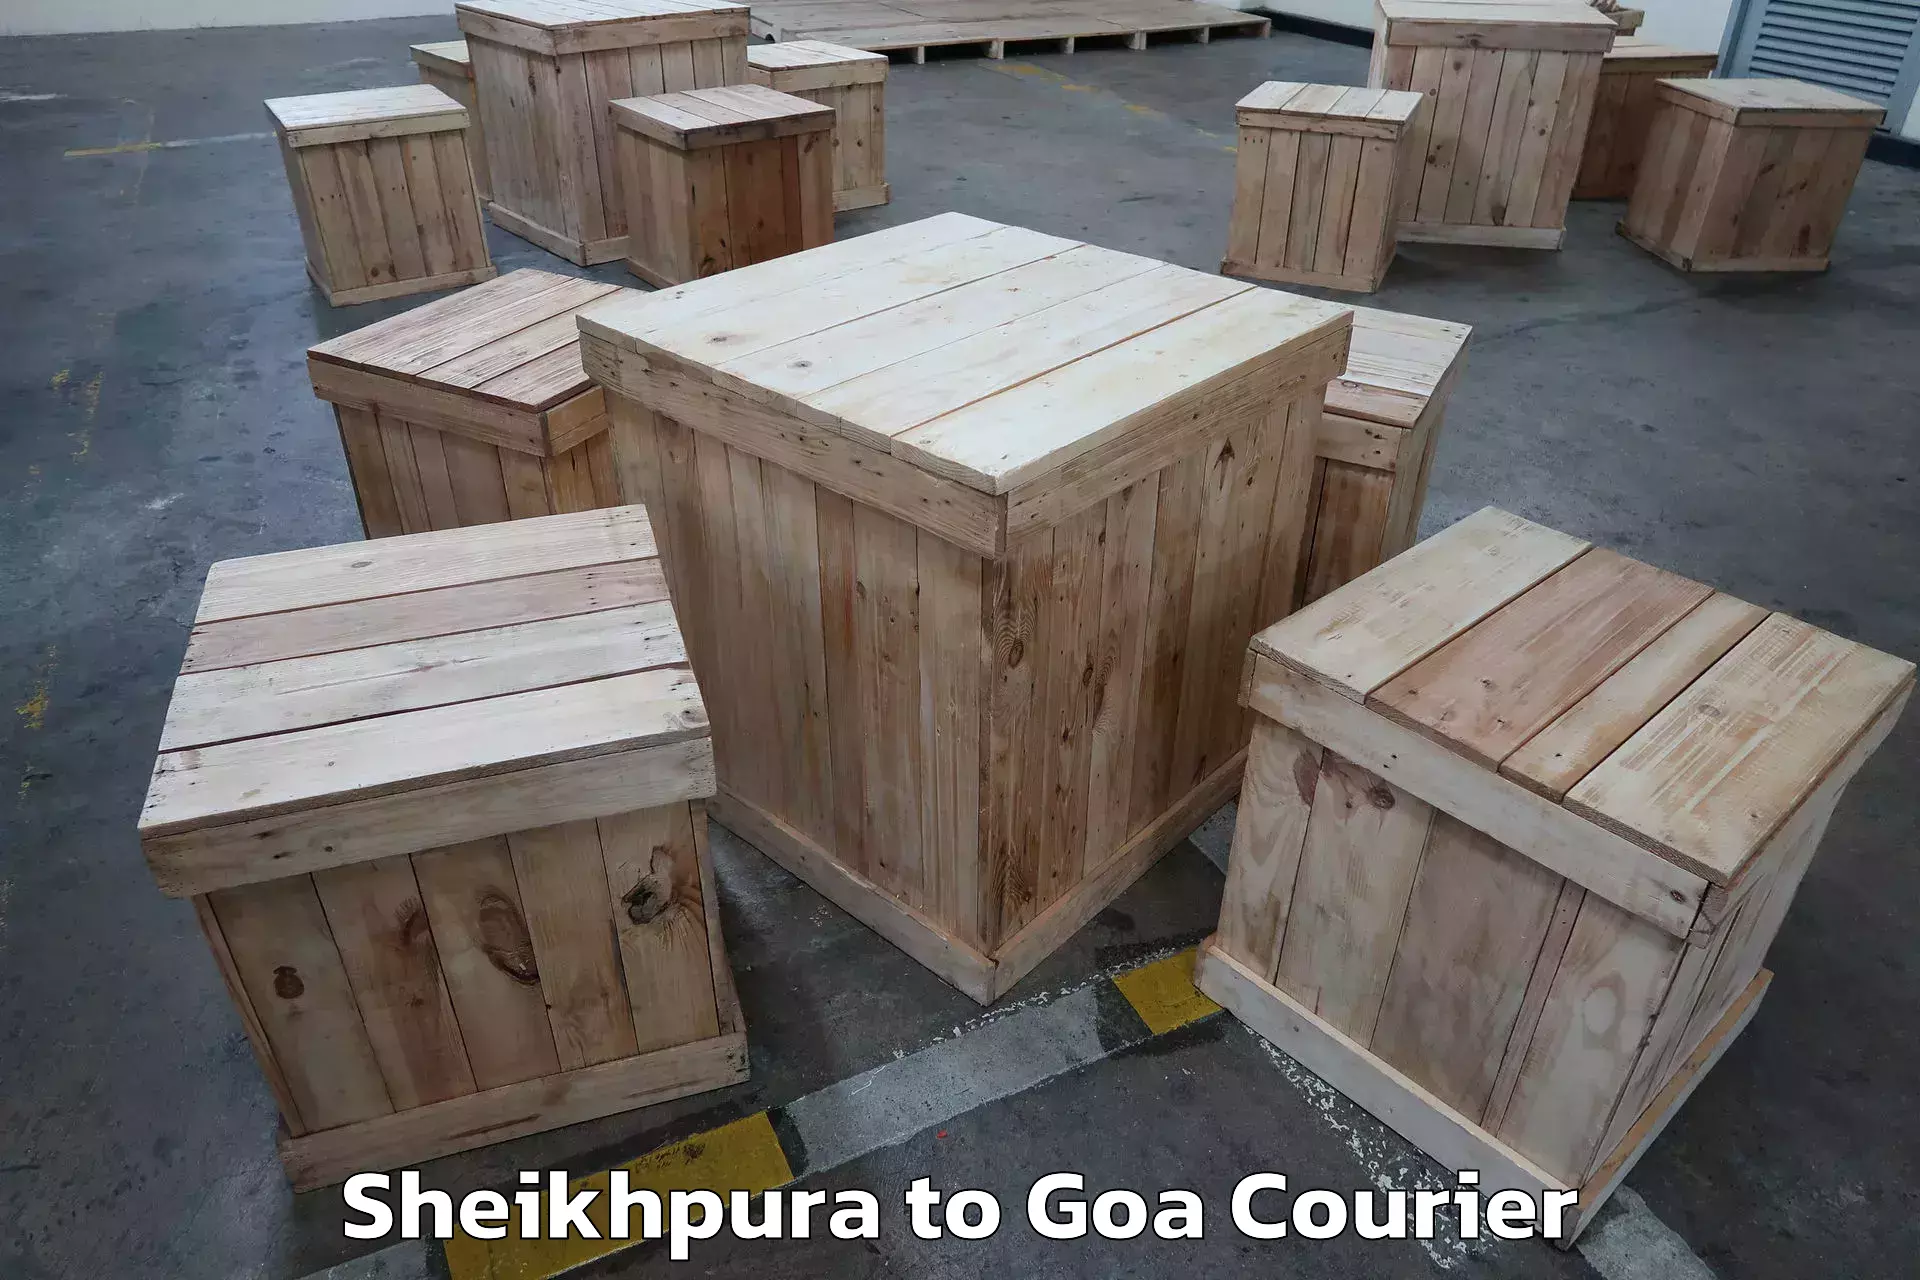 Home moving specialists Sheikhpura to IIT Goa